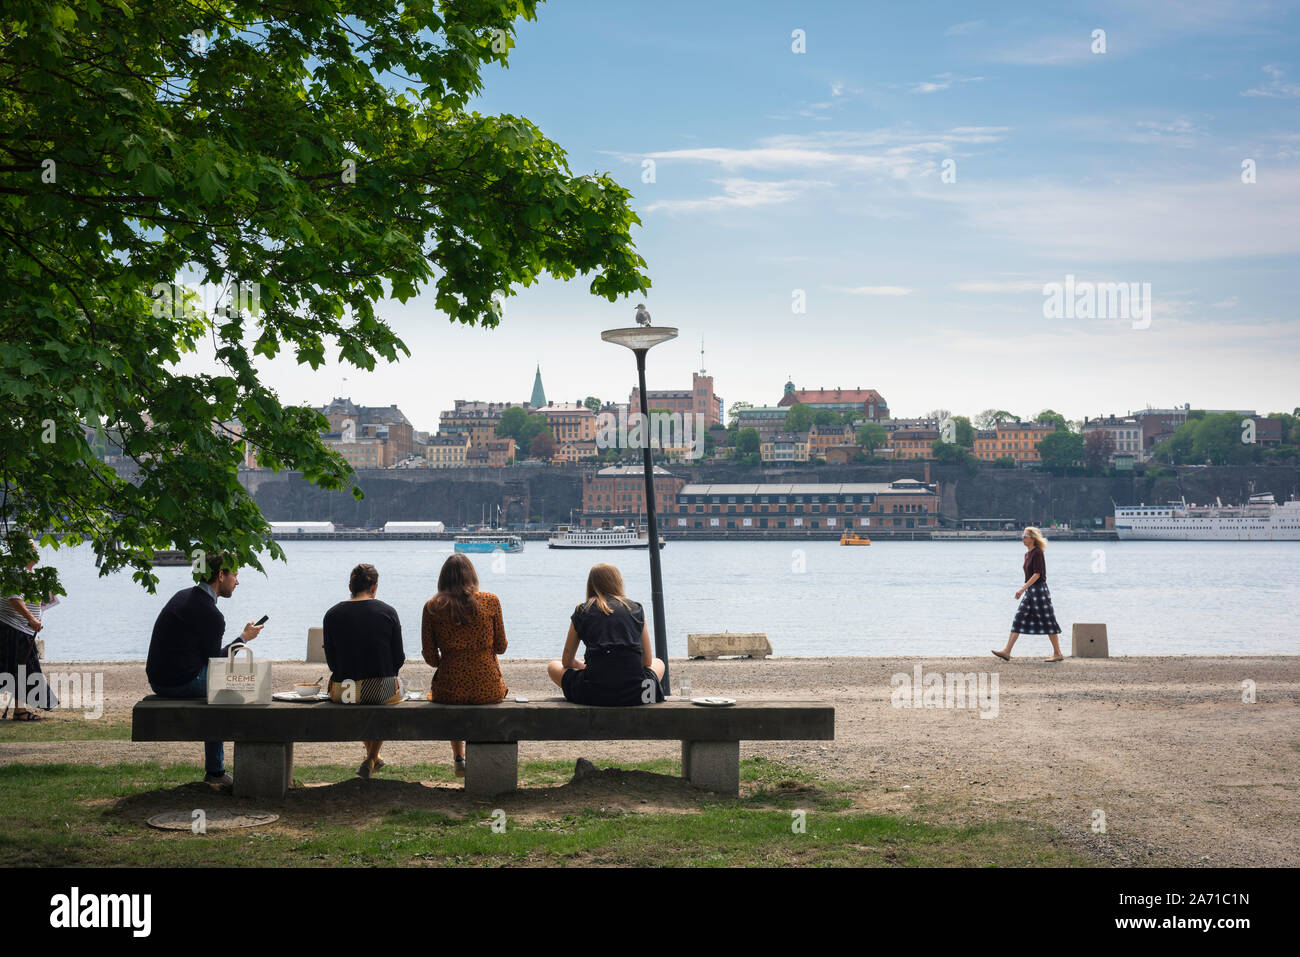 Persone mangiare il pranzo vista posteriore di un gruppo di giovani seduti su una panchina nel loro ora di pranzo, centrale di Stoccolma, Svezia. Foto Stock